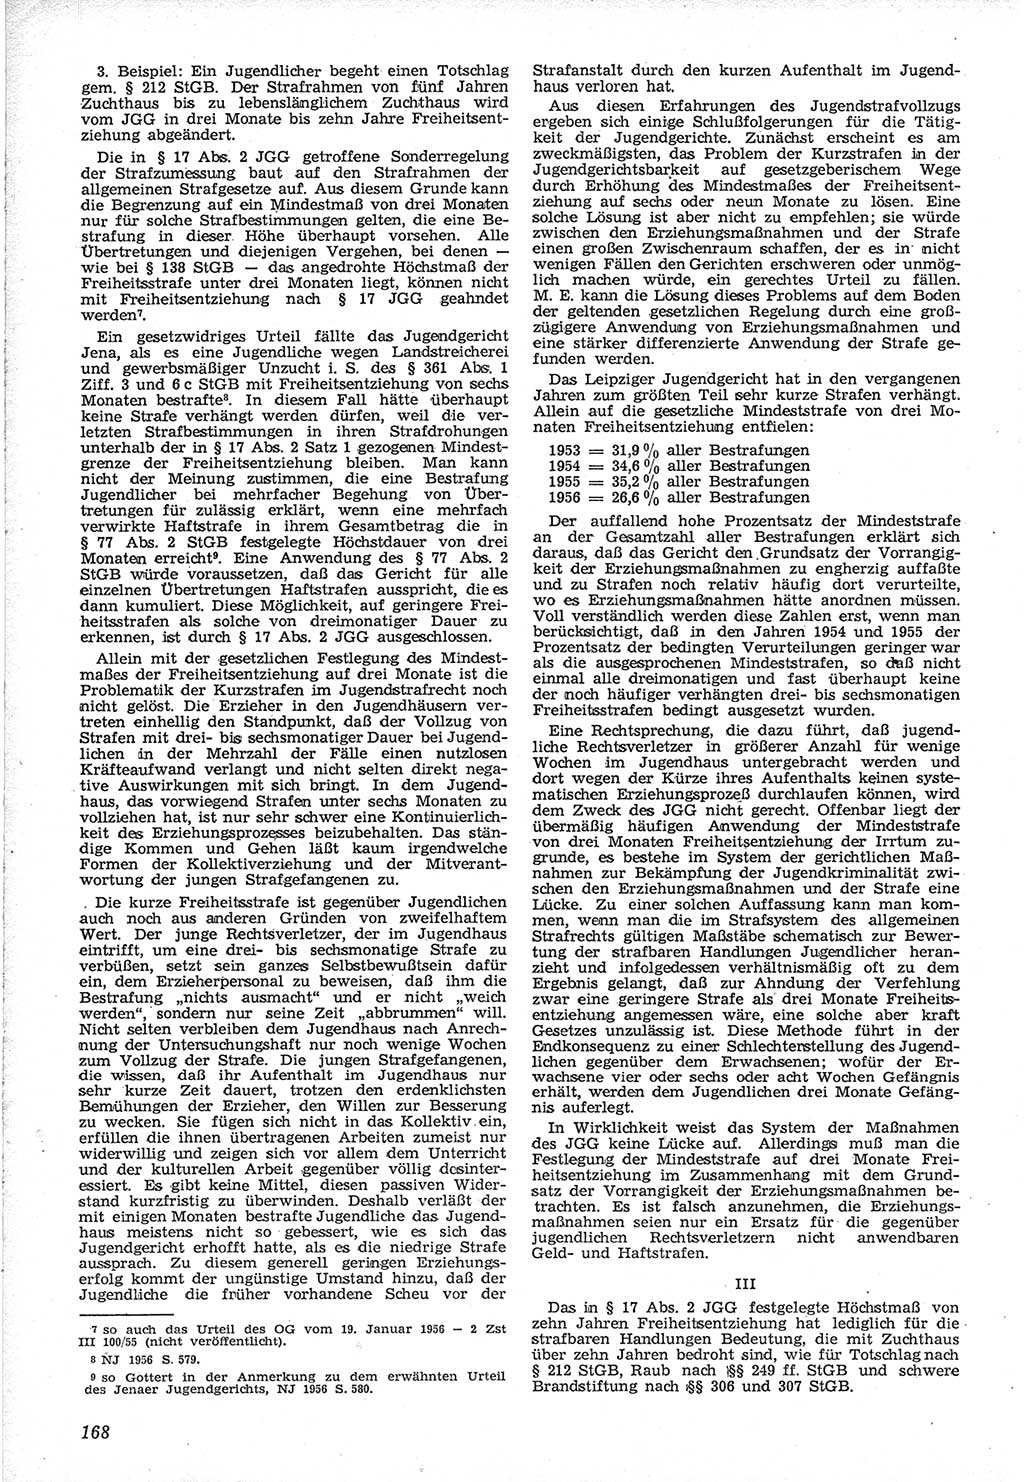 Neue Justiz (NJ), Zeitschrift für Recht und Rechtswissenschaft [Deutsche Demokratische Republik (DDR)], 12. Jahrgang 1958, Seite 168 (NJ DDR 1958, S. 168)